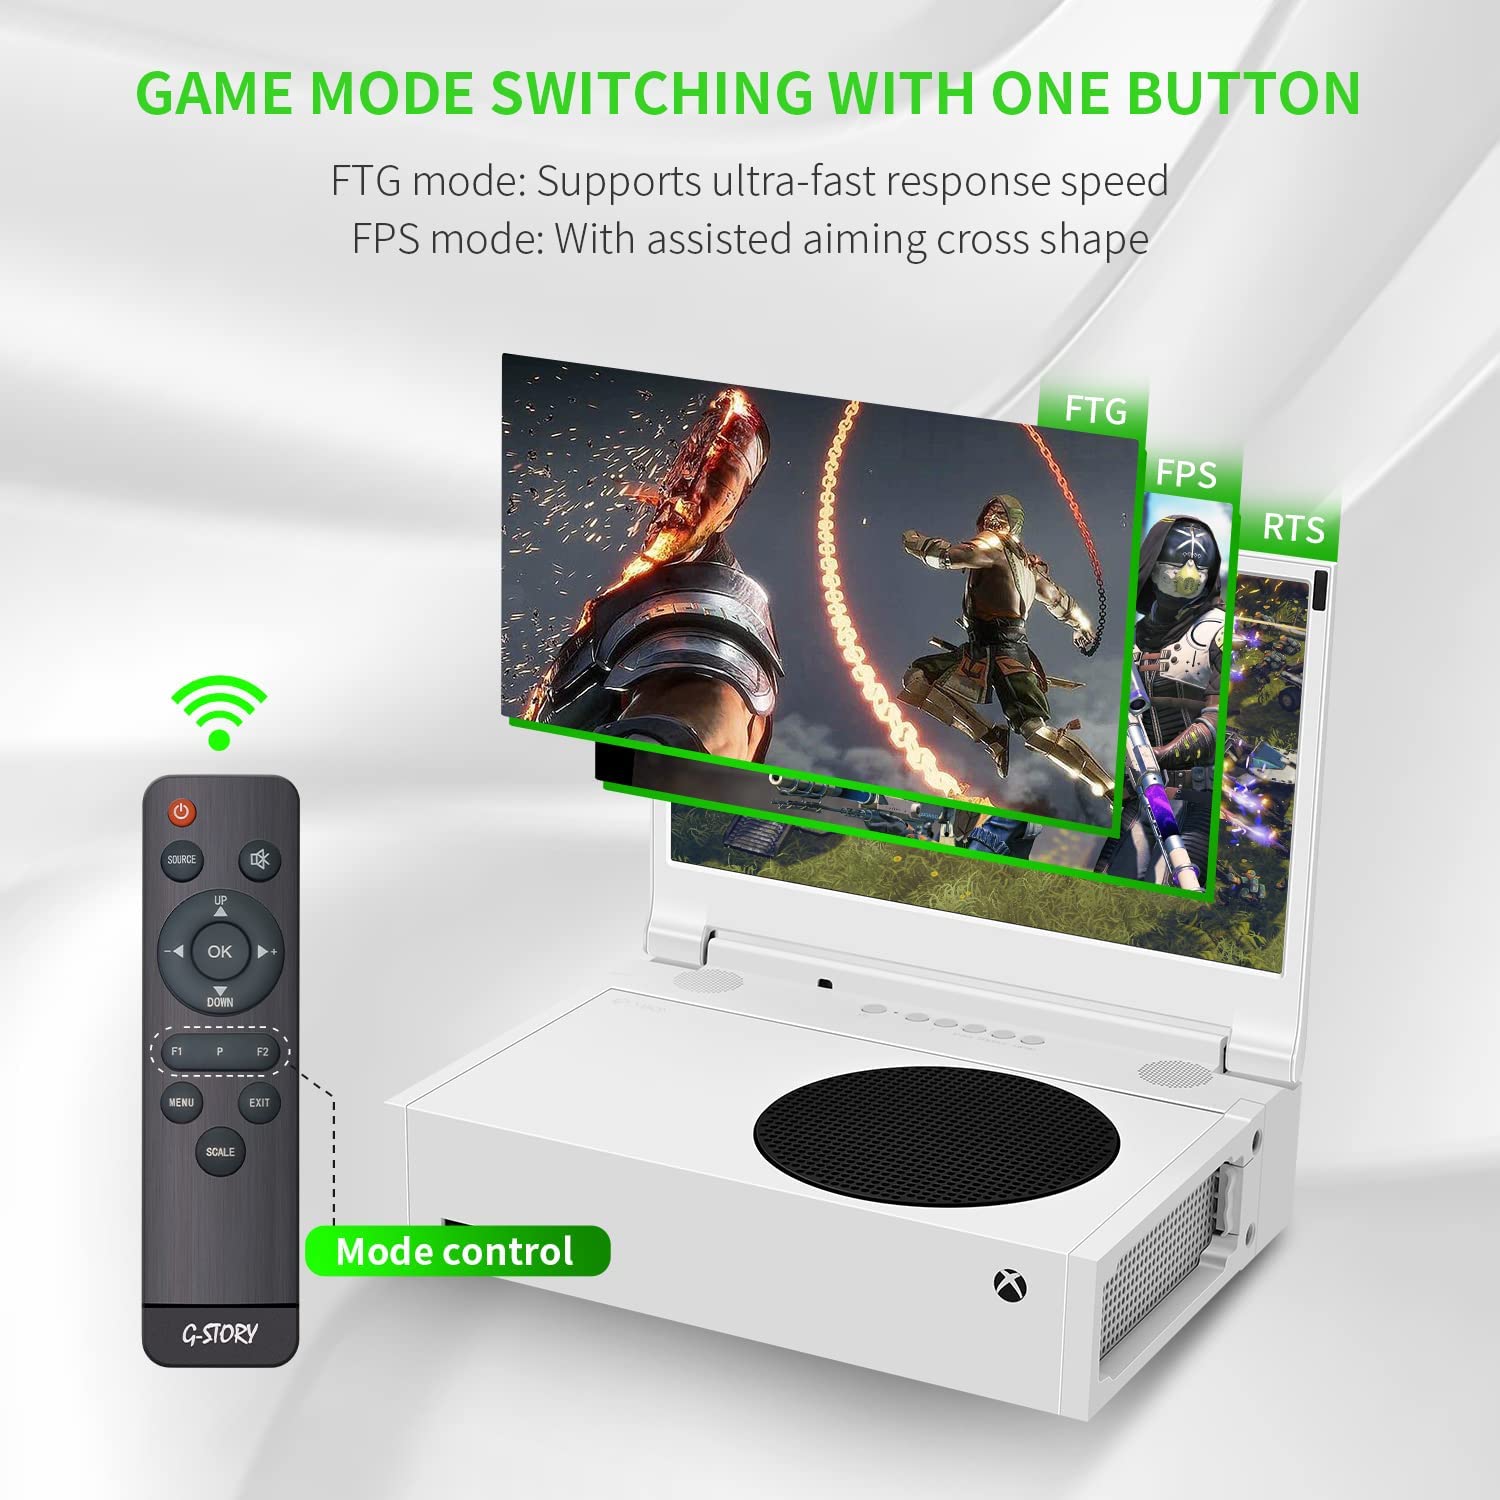 再販開始G-STORY Xbox Series S専用モバイルモニター12.5 インチ Nintendo Switch